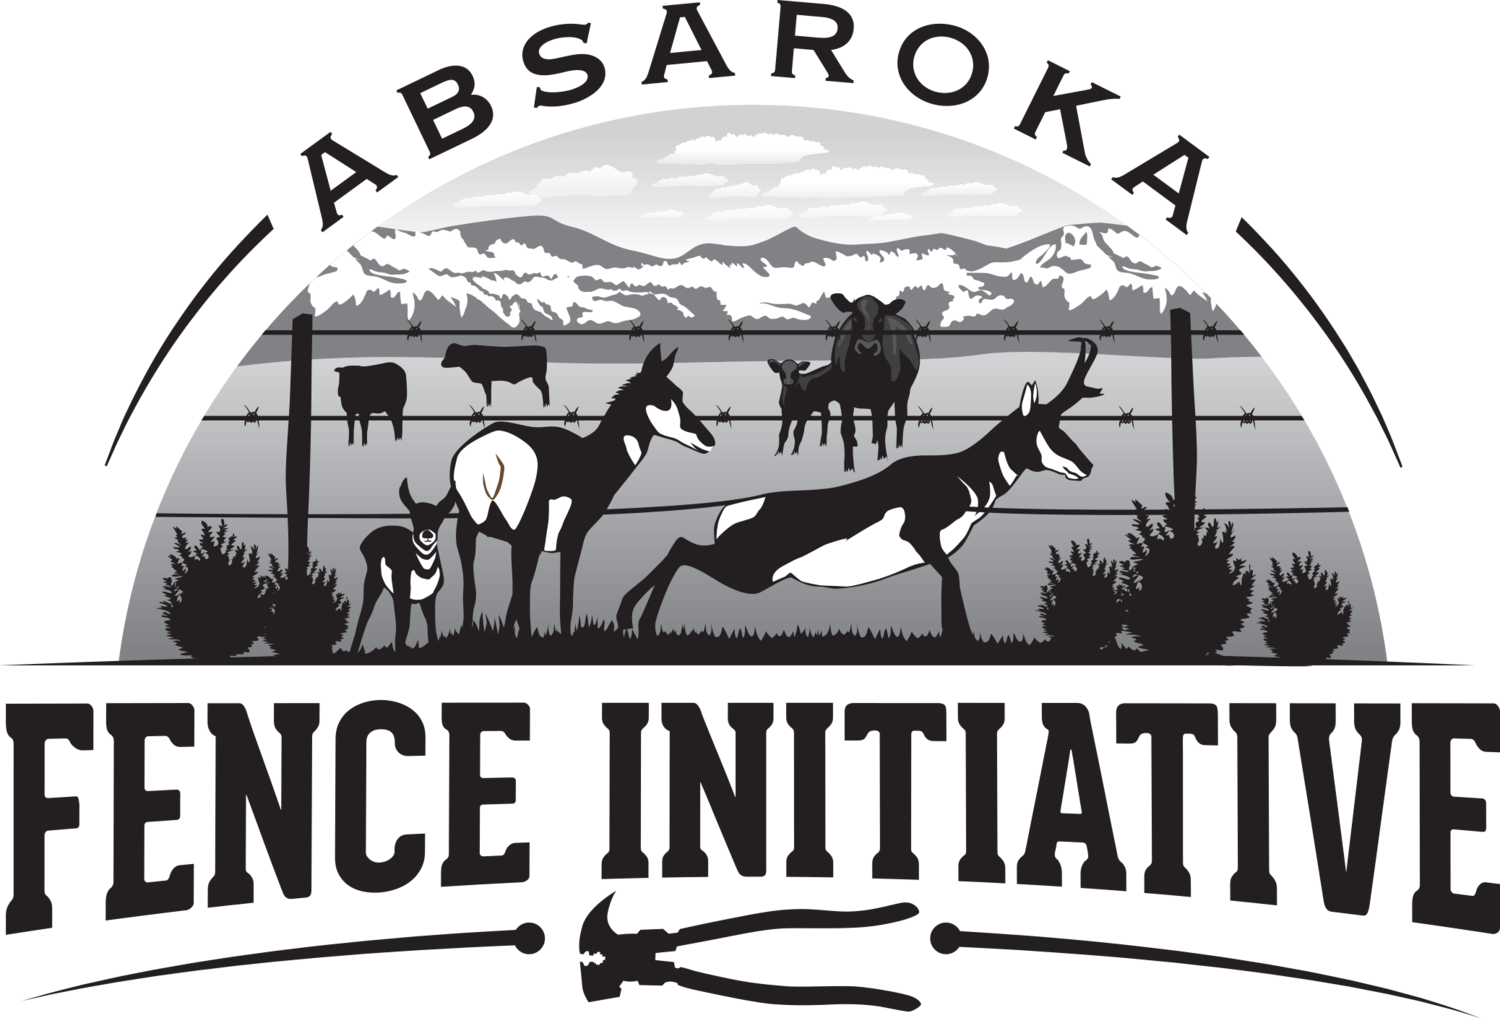 Absaroka Fence Initiative 